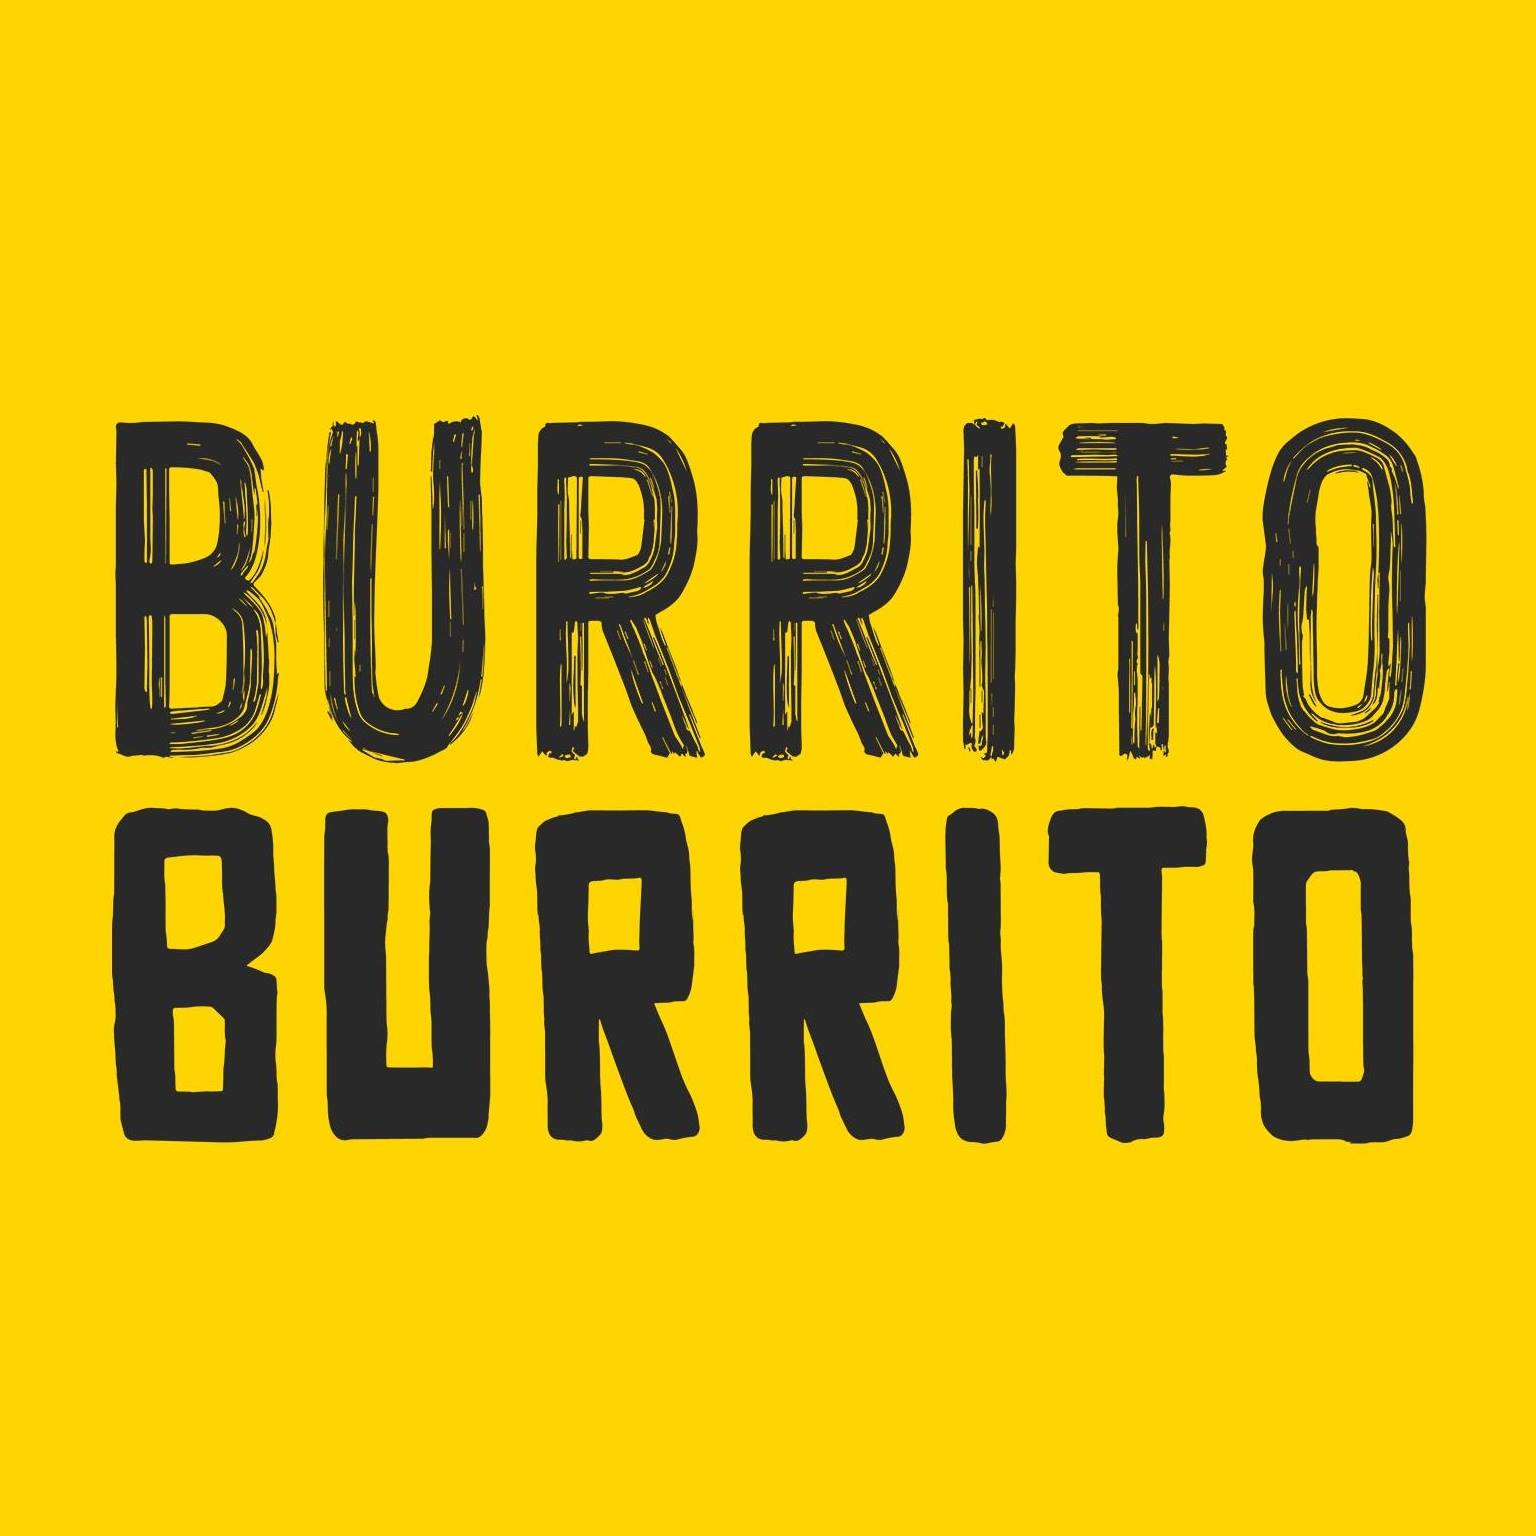 Burrito Burrito